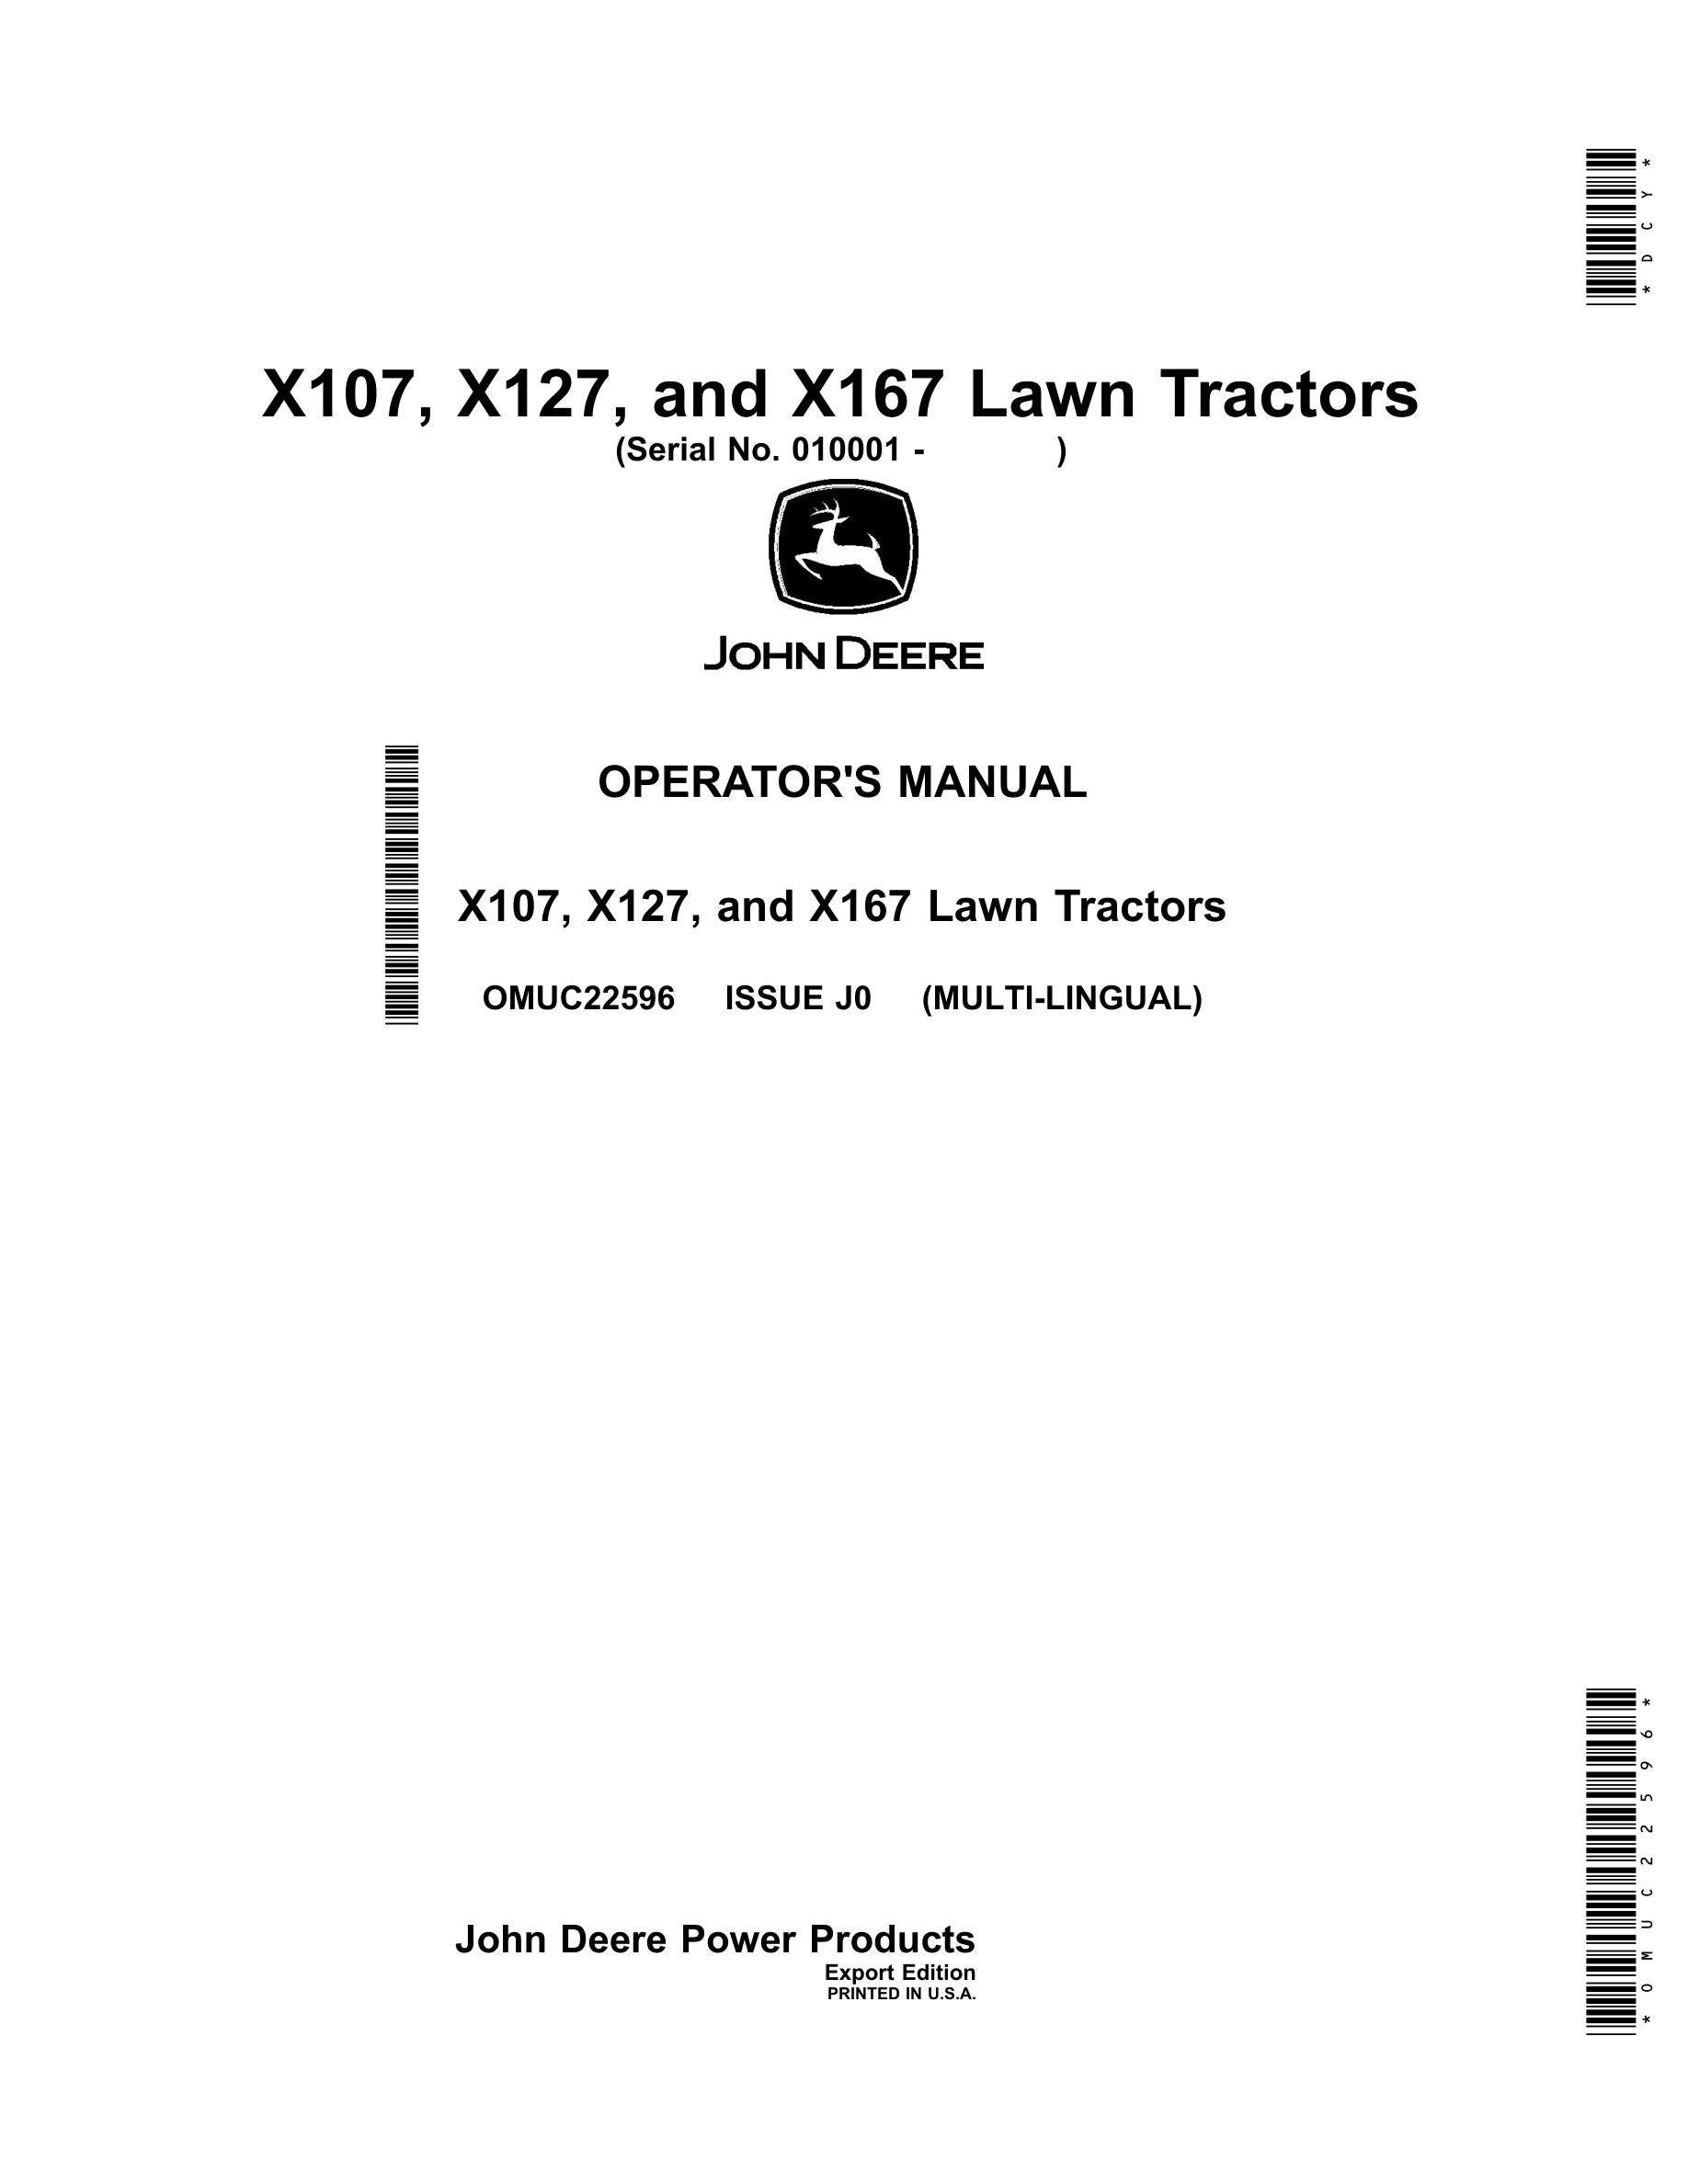 John Deere X107, X127, And X167 Lawn Tractors Operator Manuals OMUC22596-1